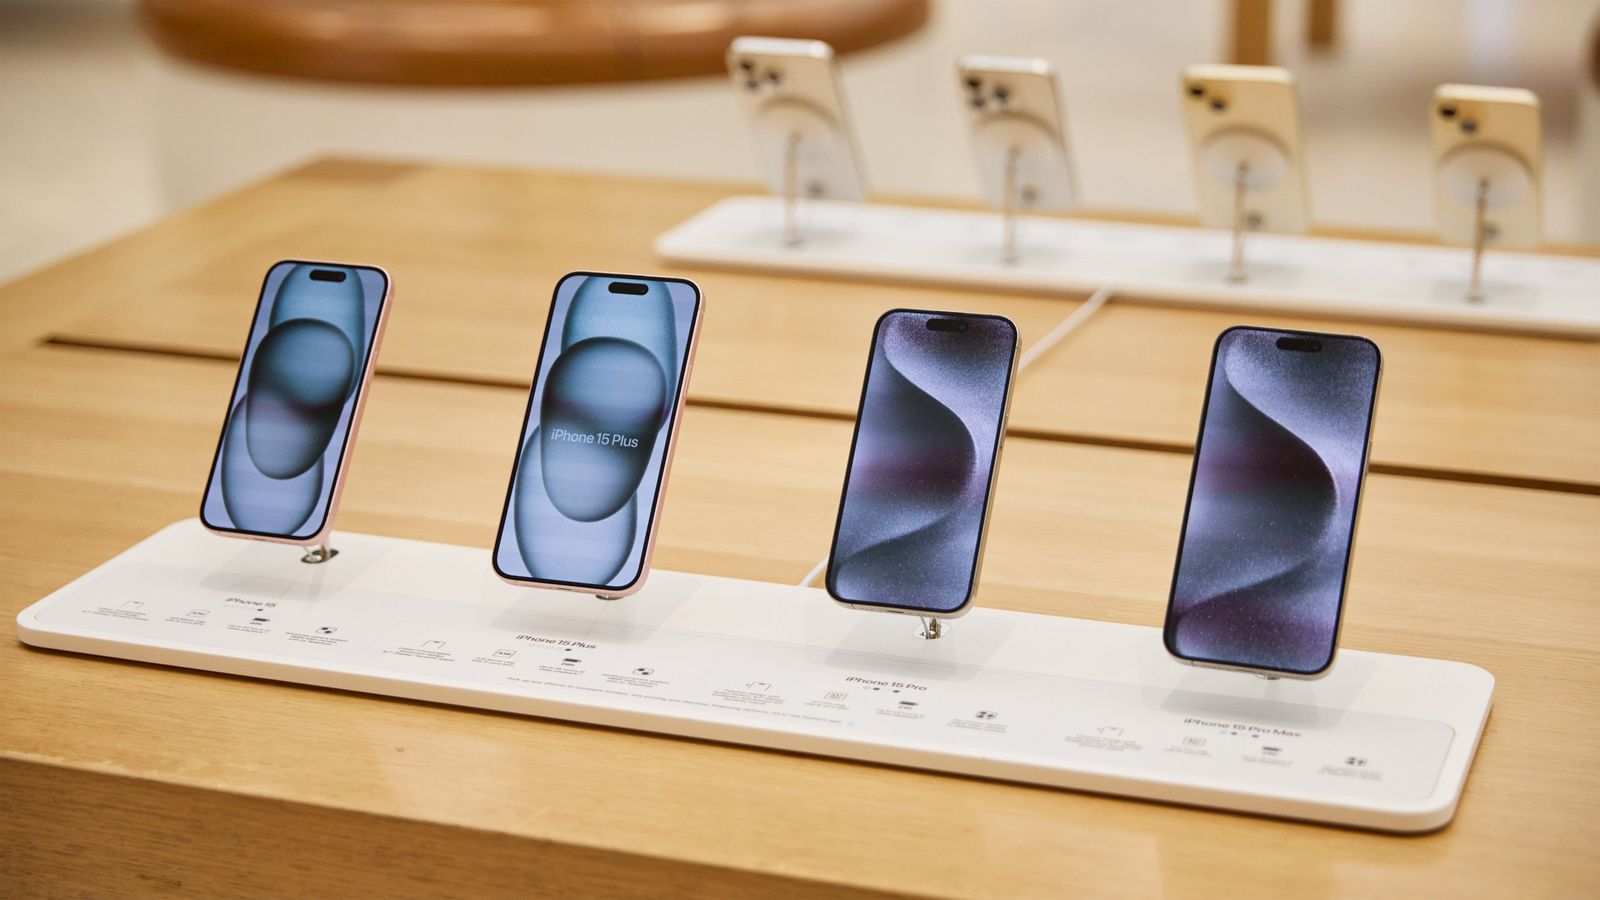 من iPhoneIslam.com، خمسة هواتف ذكية معروضة في أحد متاجر البيع بالتجزئة، يعرض كل منها شاشته بخلفيات مختلفة، بما في ذلك آخر تحديثات الأخبار.